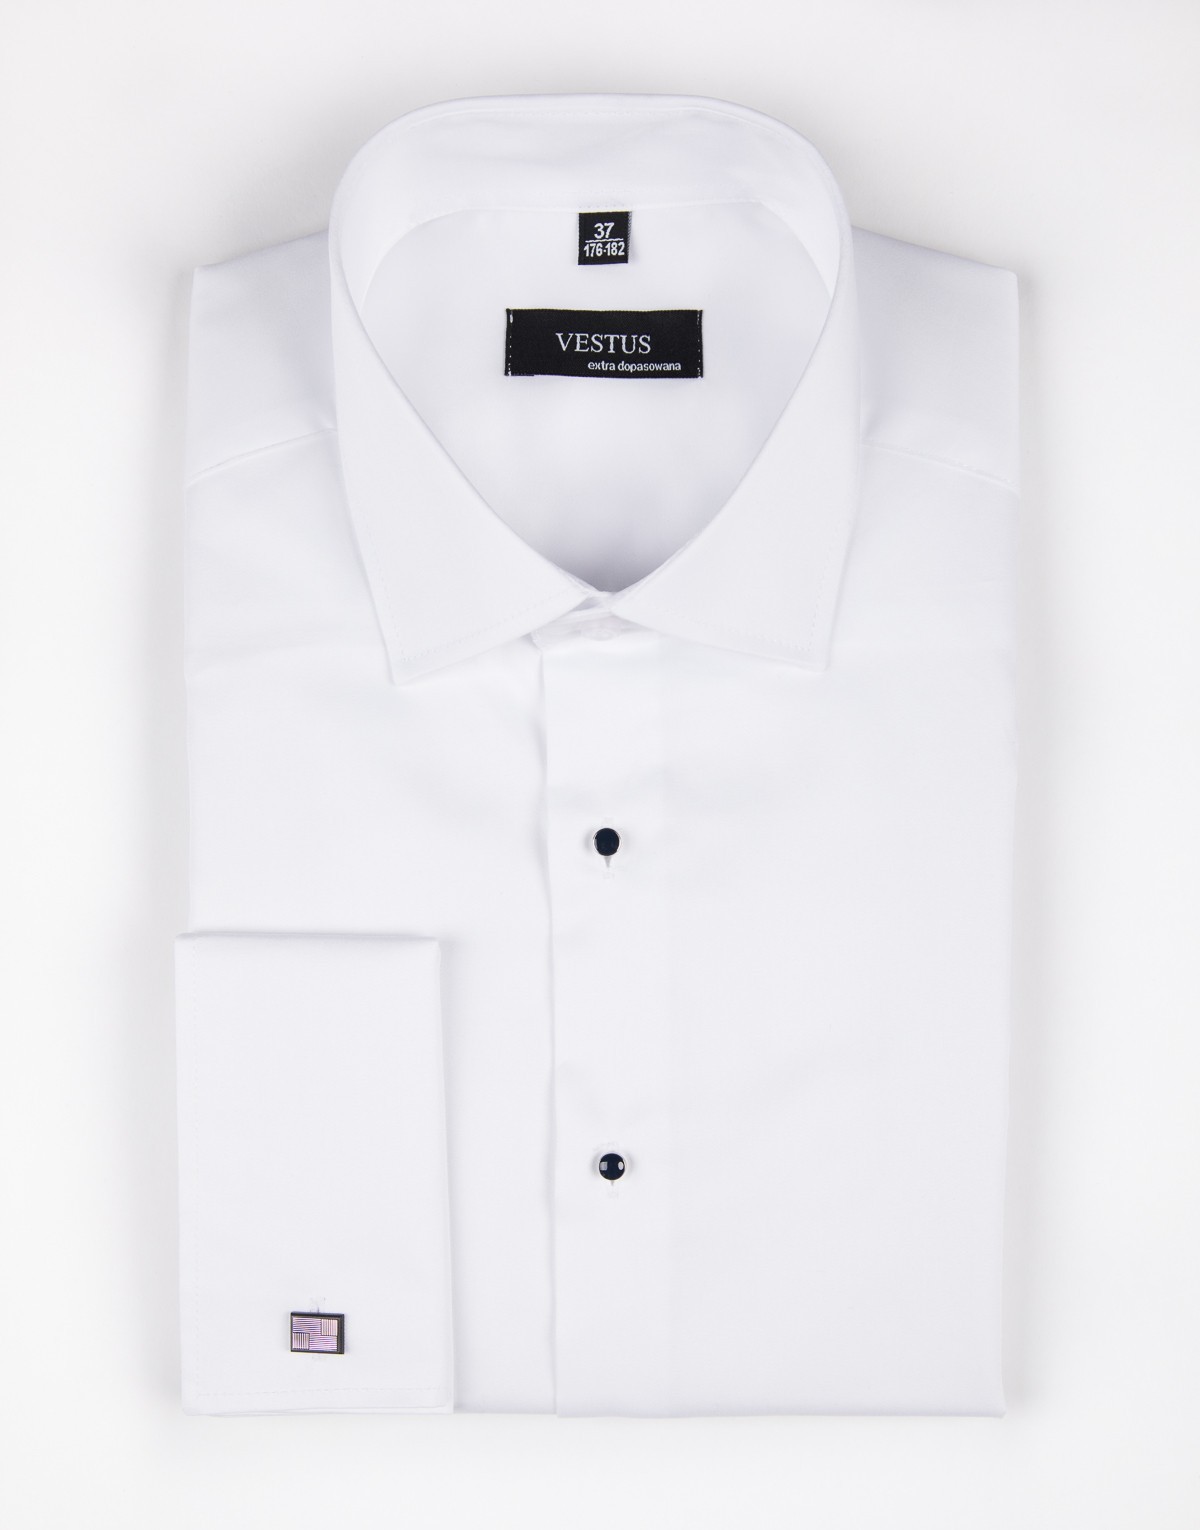 Biała koszula na spinki z guzikami jubilerskimi KR1044